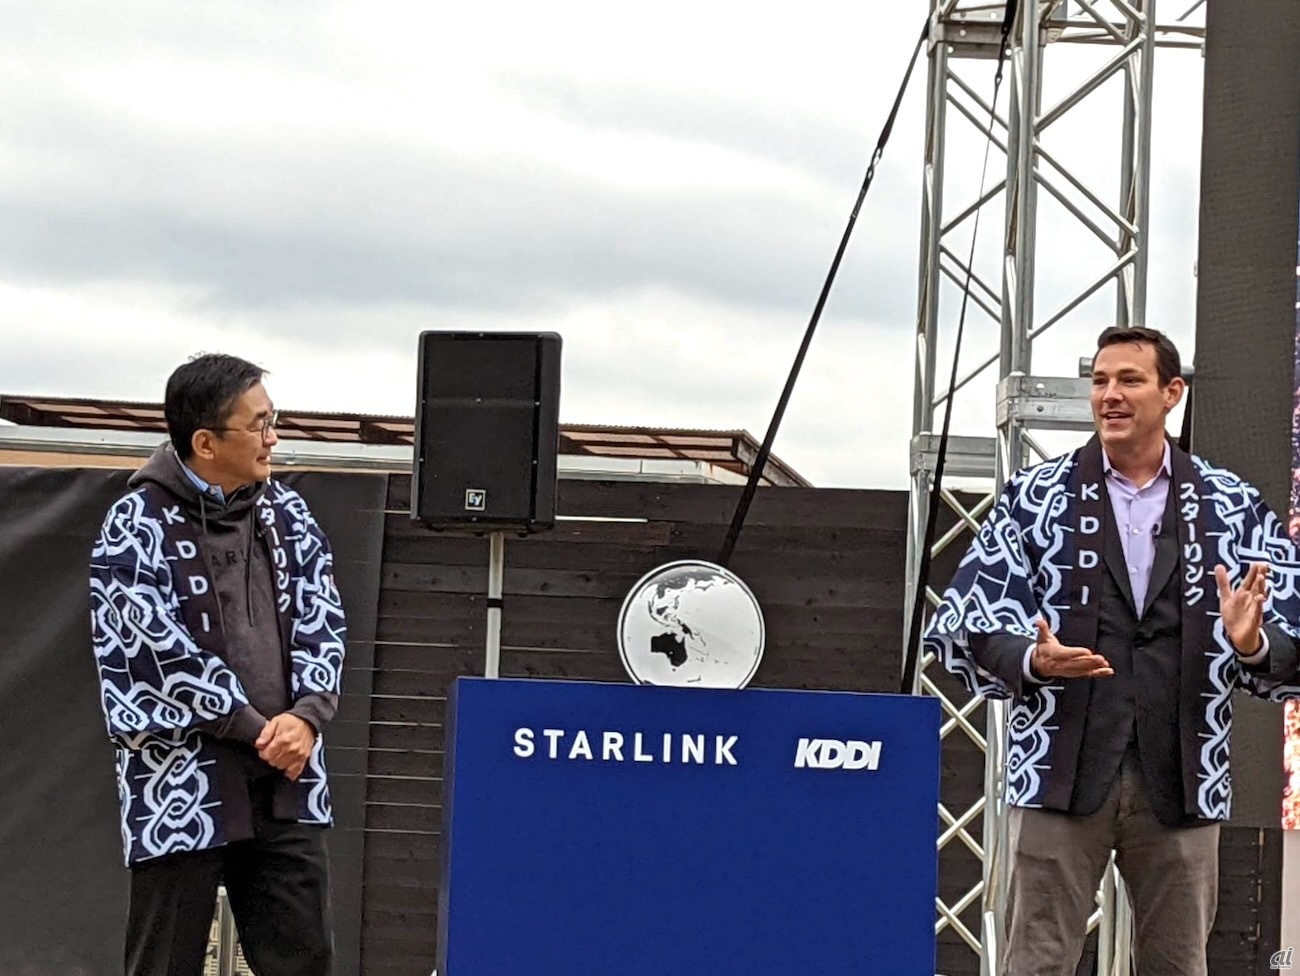 左からKDDIの高橋誠氏、SpaceXのJonathan Hofeller氏